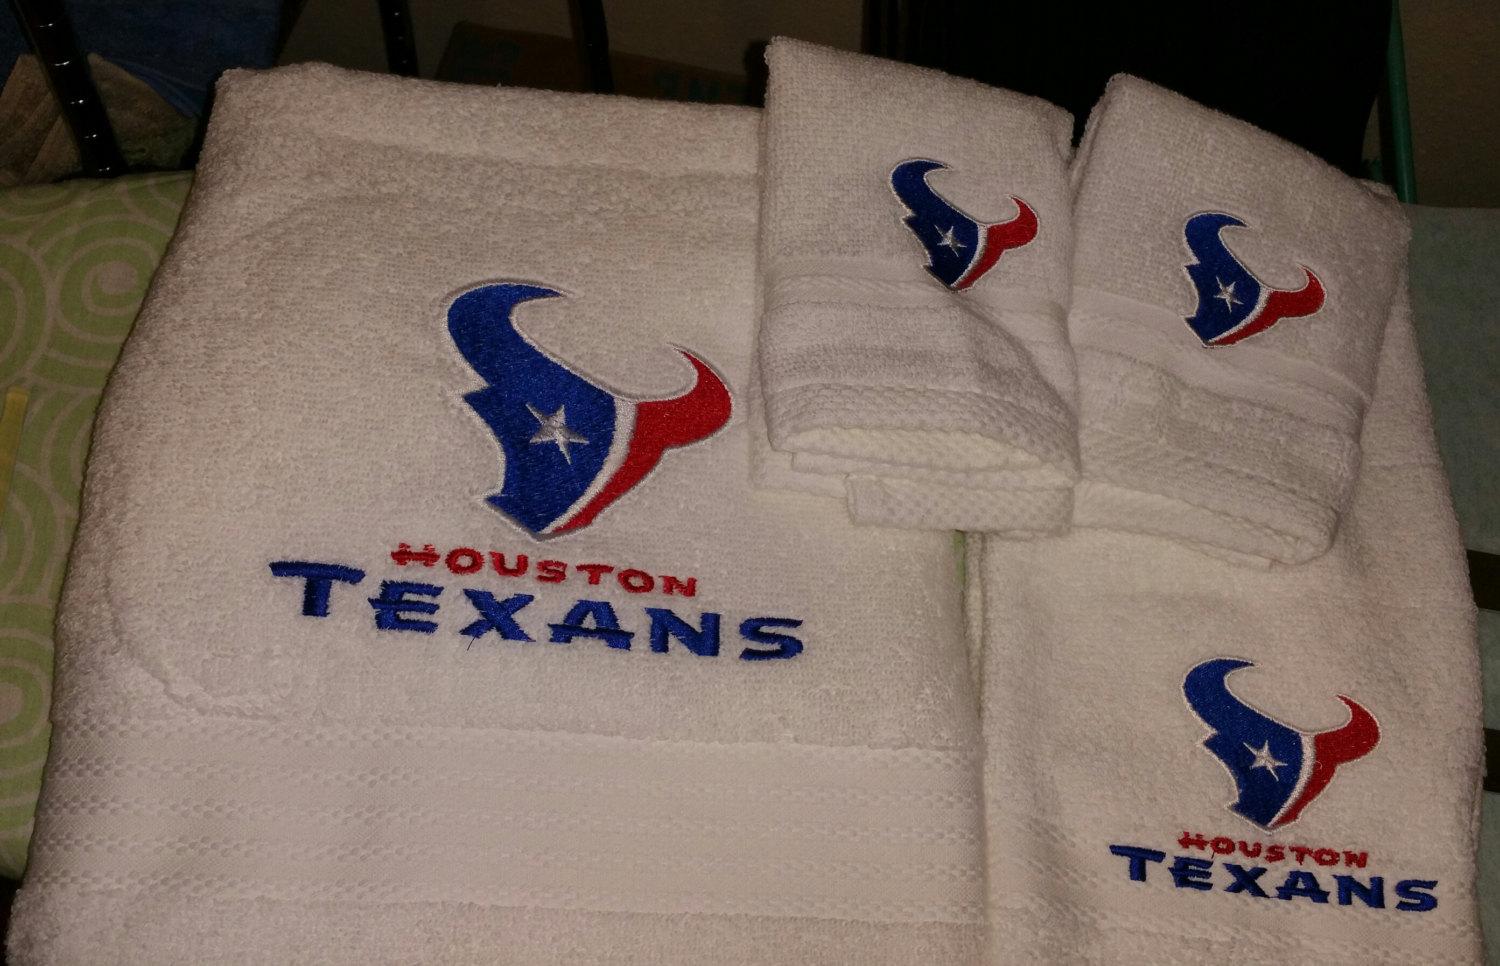 Houston Texans logo machine embroidery design